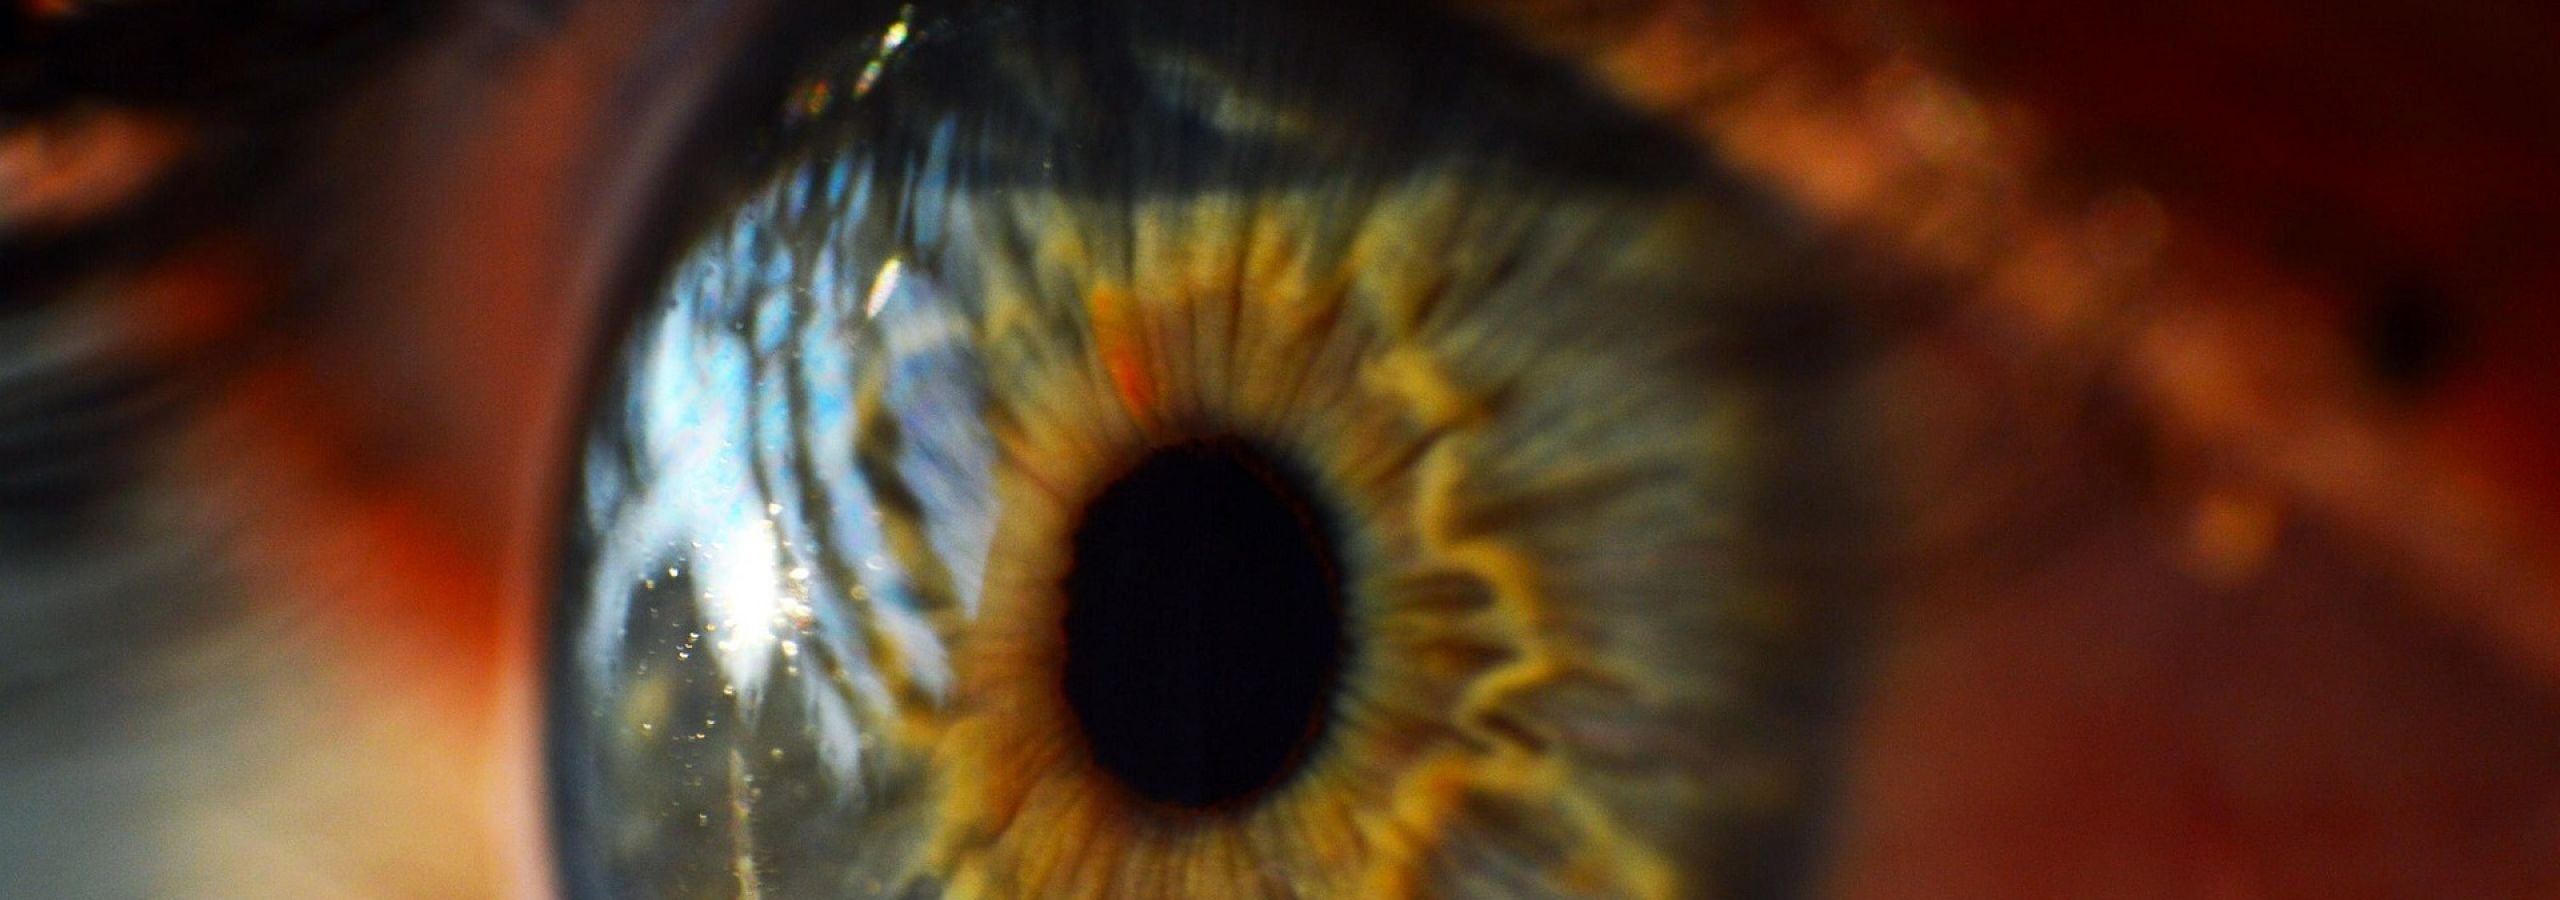 close up of human eye close up of human eye